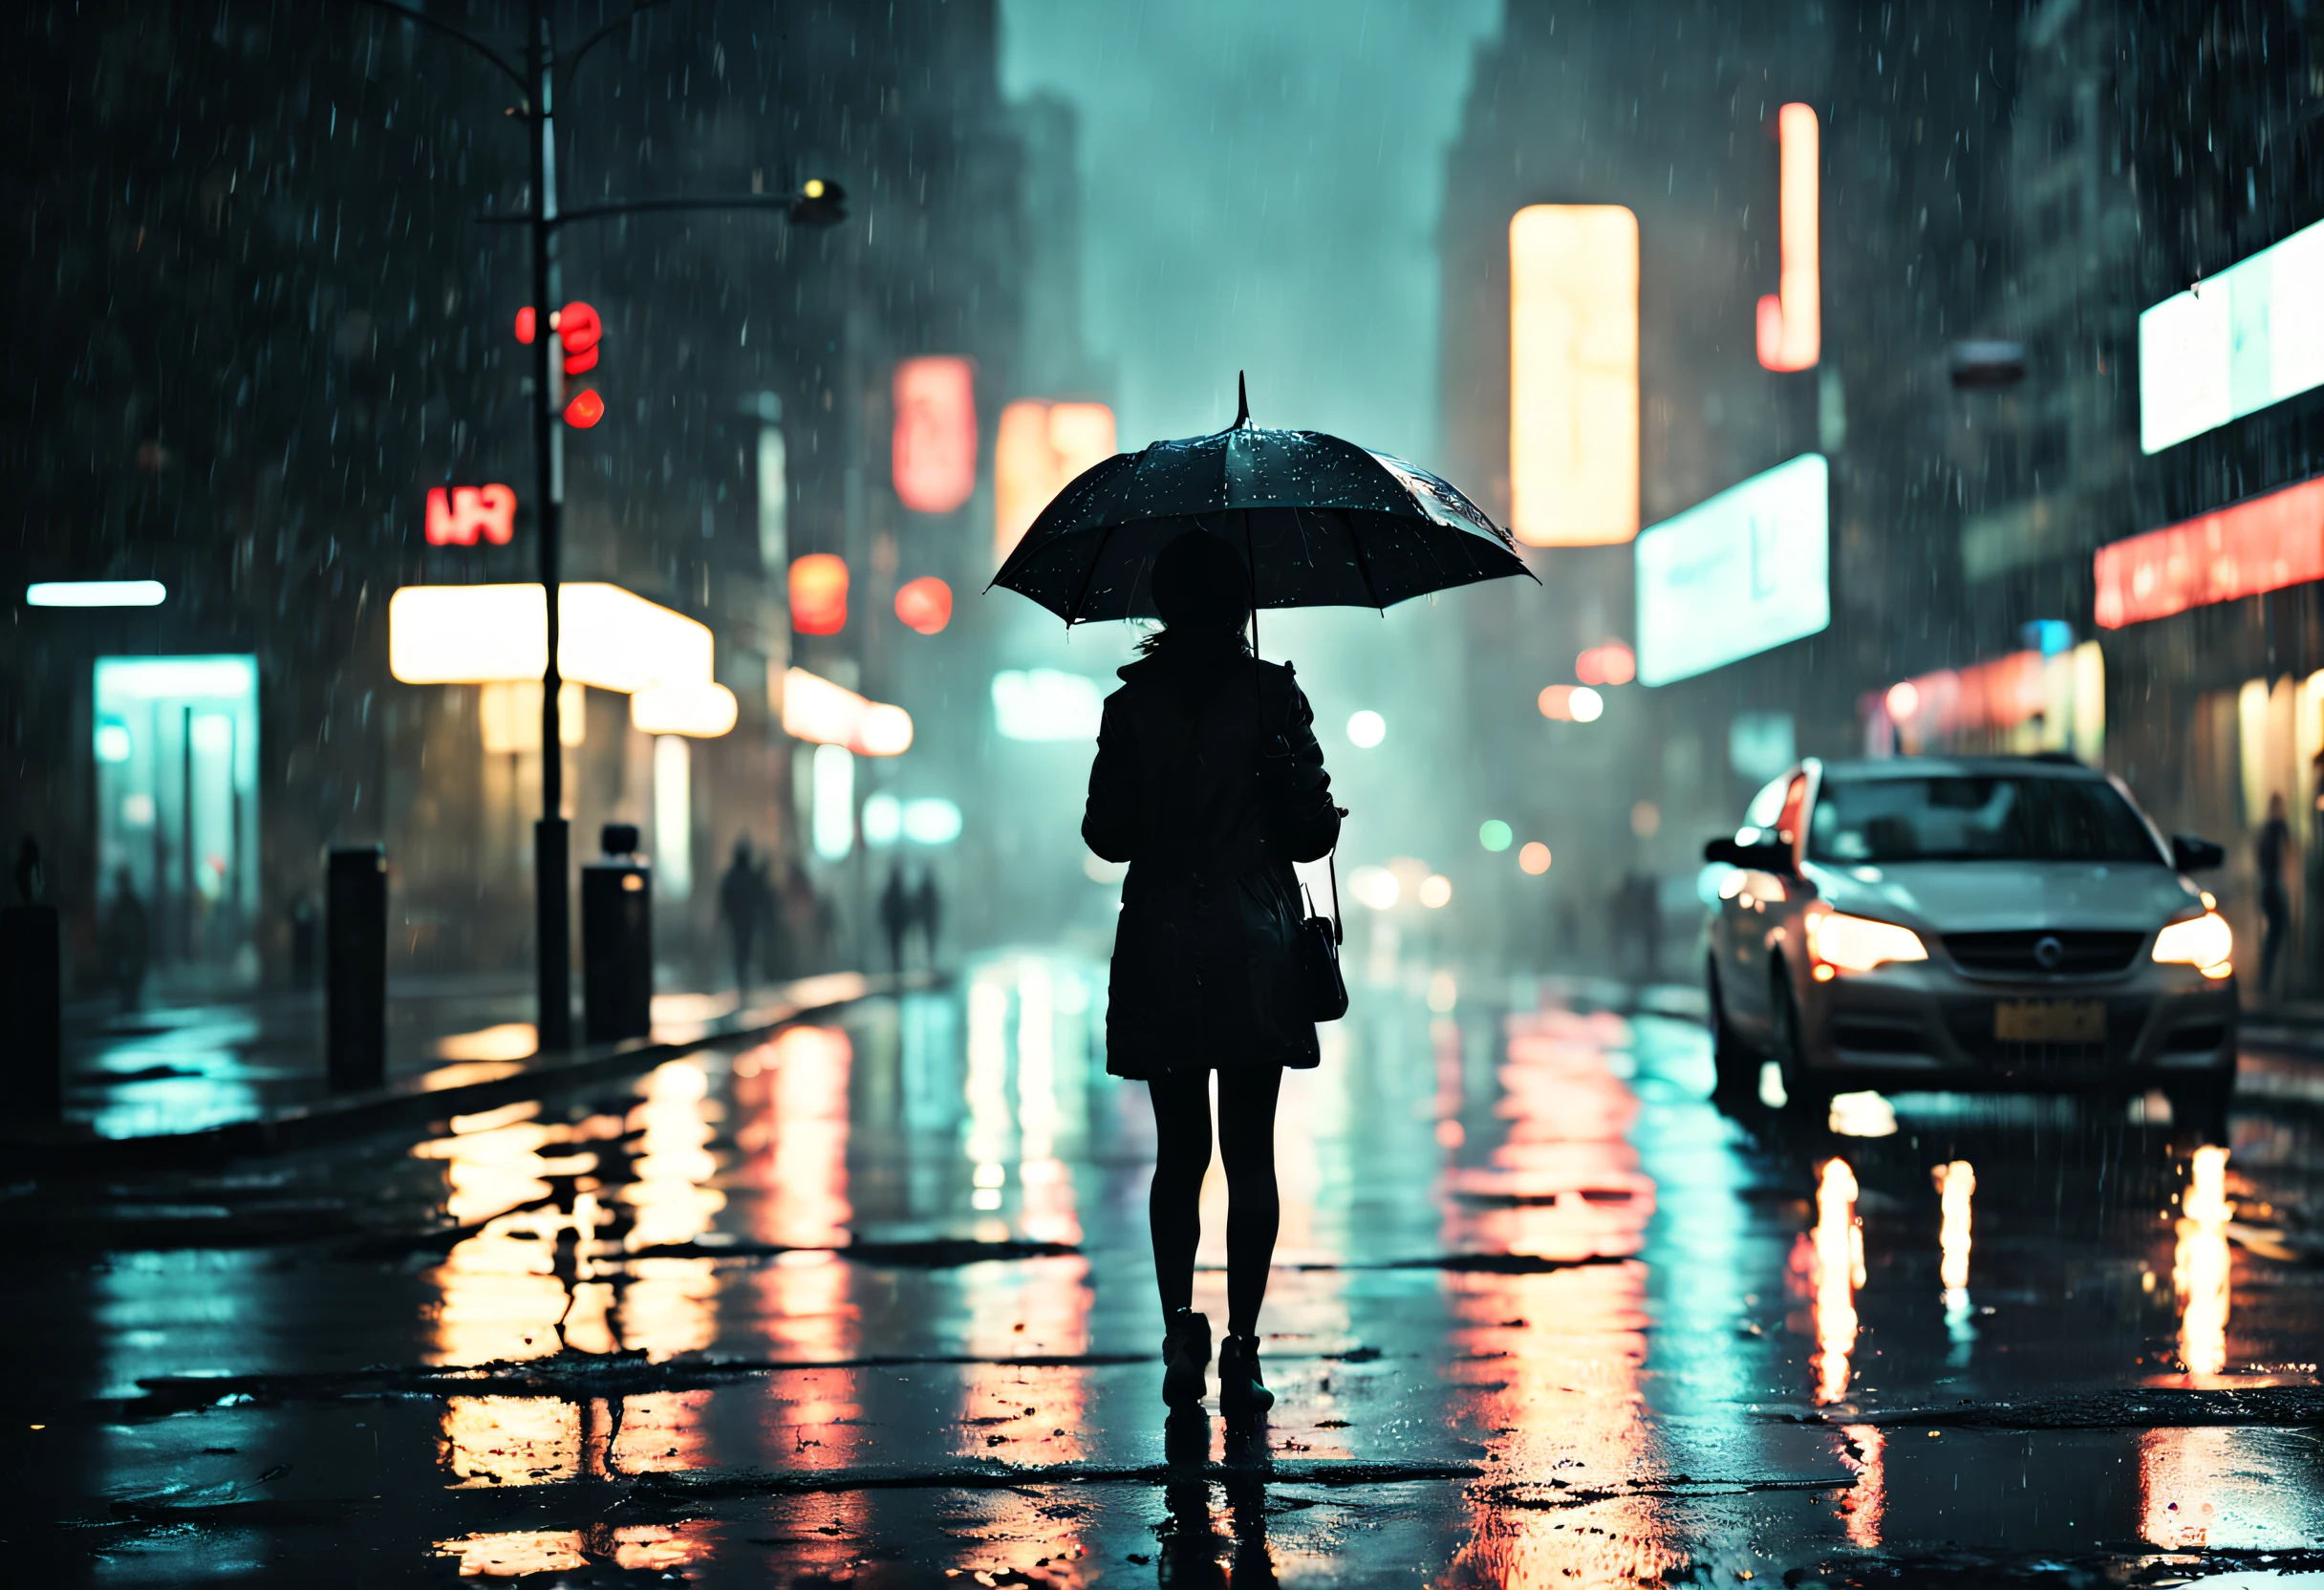 ein Mädchen steht unter einem tropfenden Regenschirm in einer schwach beleuchteten Straße,Regentropfen glitzern auf dem nassen Asphalt,warmes Leuchten der Straßenlaternen,Reflexionen von Neonschildern in den Pfützen,Menschen eilen mit Regenschirmen, das Geräusch von Regentropfen, die auf den Regenschirm treffen, nasse Blätter auf dem Boden verstreut, neblige Atmosphäre, die Silhouette des Mädchens im Licht der Straßenlaternen, rainy Stadtbild at night, Filmische und stimmungsvolle Beleuchtung, dramatischer Kontrast zwischen Hell und Dunkel, ein Gefühl von Geheimnis und Einsamkeit, nasse und glänzende Texturen, kühle und entsättigte Farbpalette, impressionistischer und verträumter Kunststil. (beste Qualität, 4k, ultra-detailliert, Realistisch:1.37), regnerische Nacht, Stadtbild, Filmische Beleuchtung, nasse Texturen, stimmungsvolle Atmosphäre, impressionistischer Kunststil